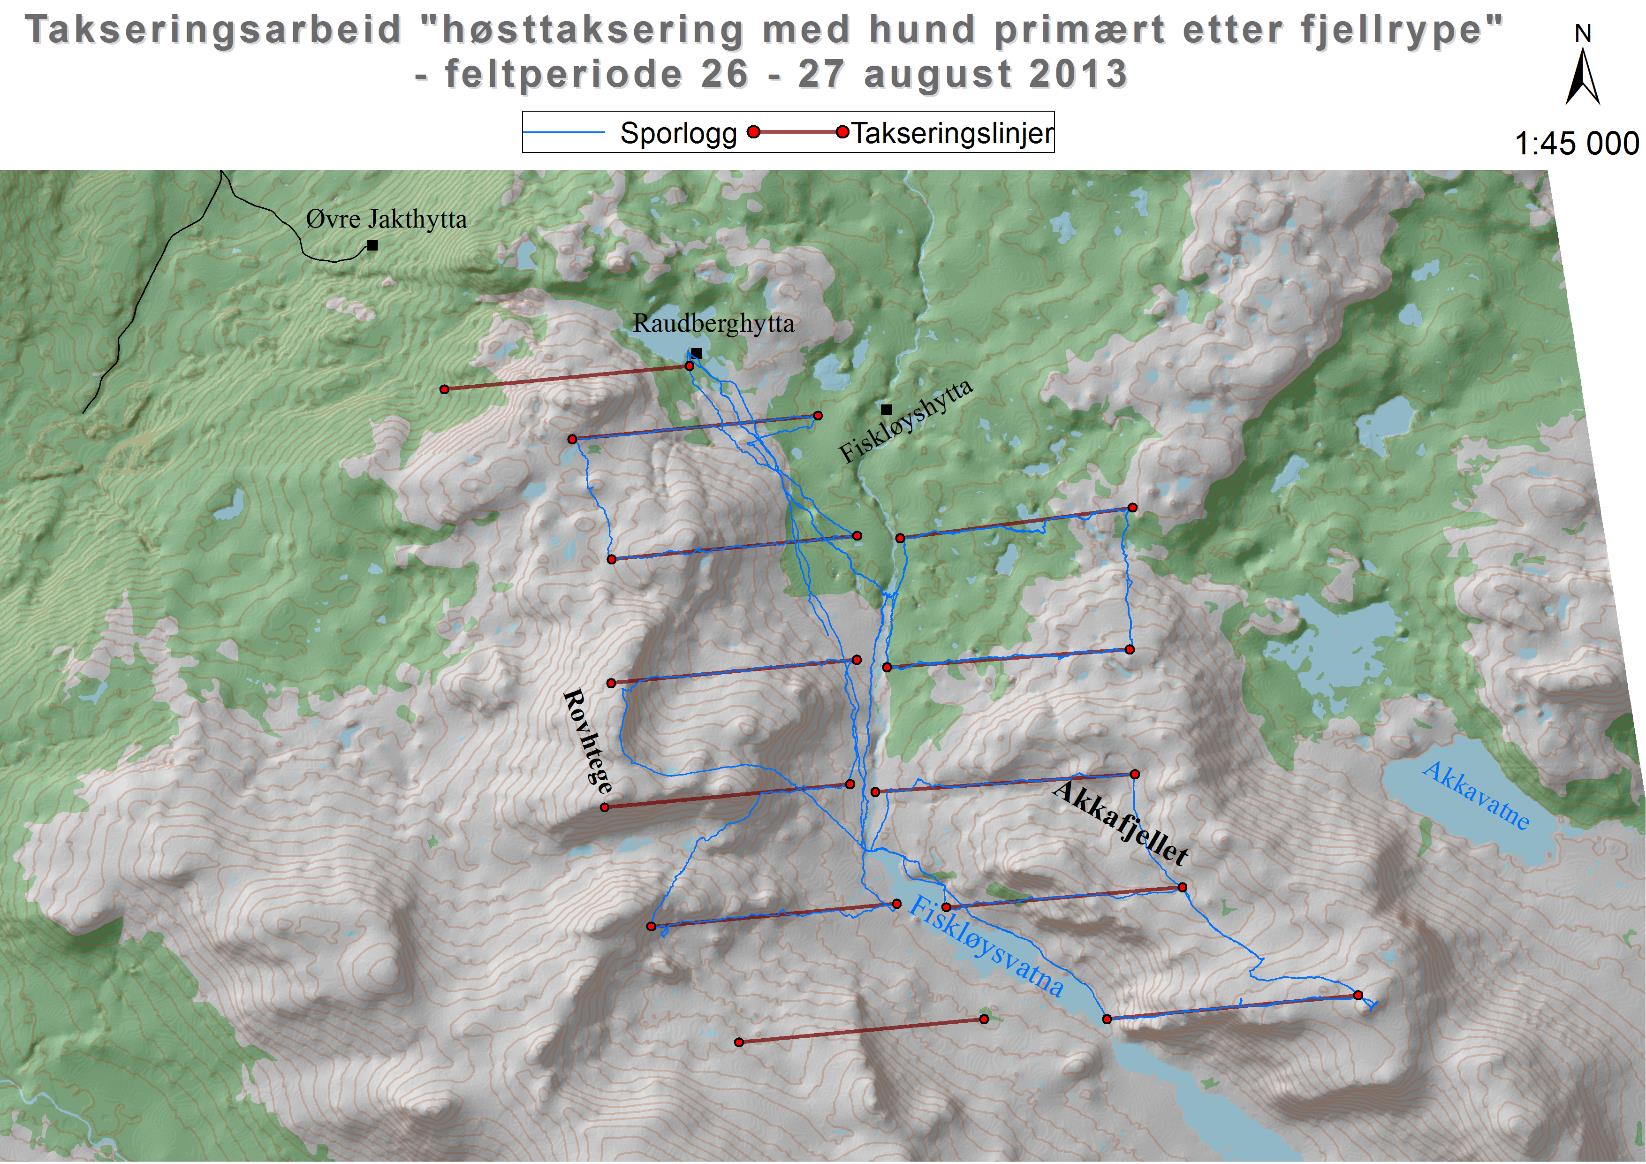 «Høsttaksering med hund primært etter fjellrype» ble gjennomført kun ett år (2013) og dekket et areal på 52 km (tabell 2).